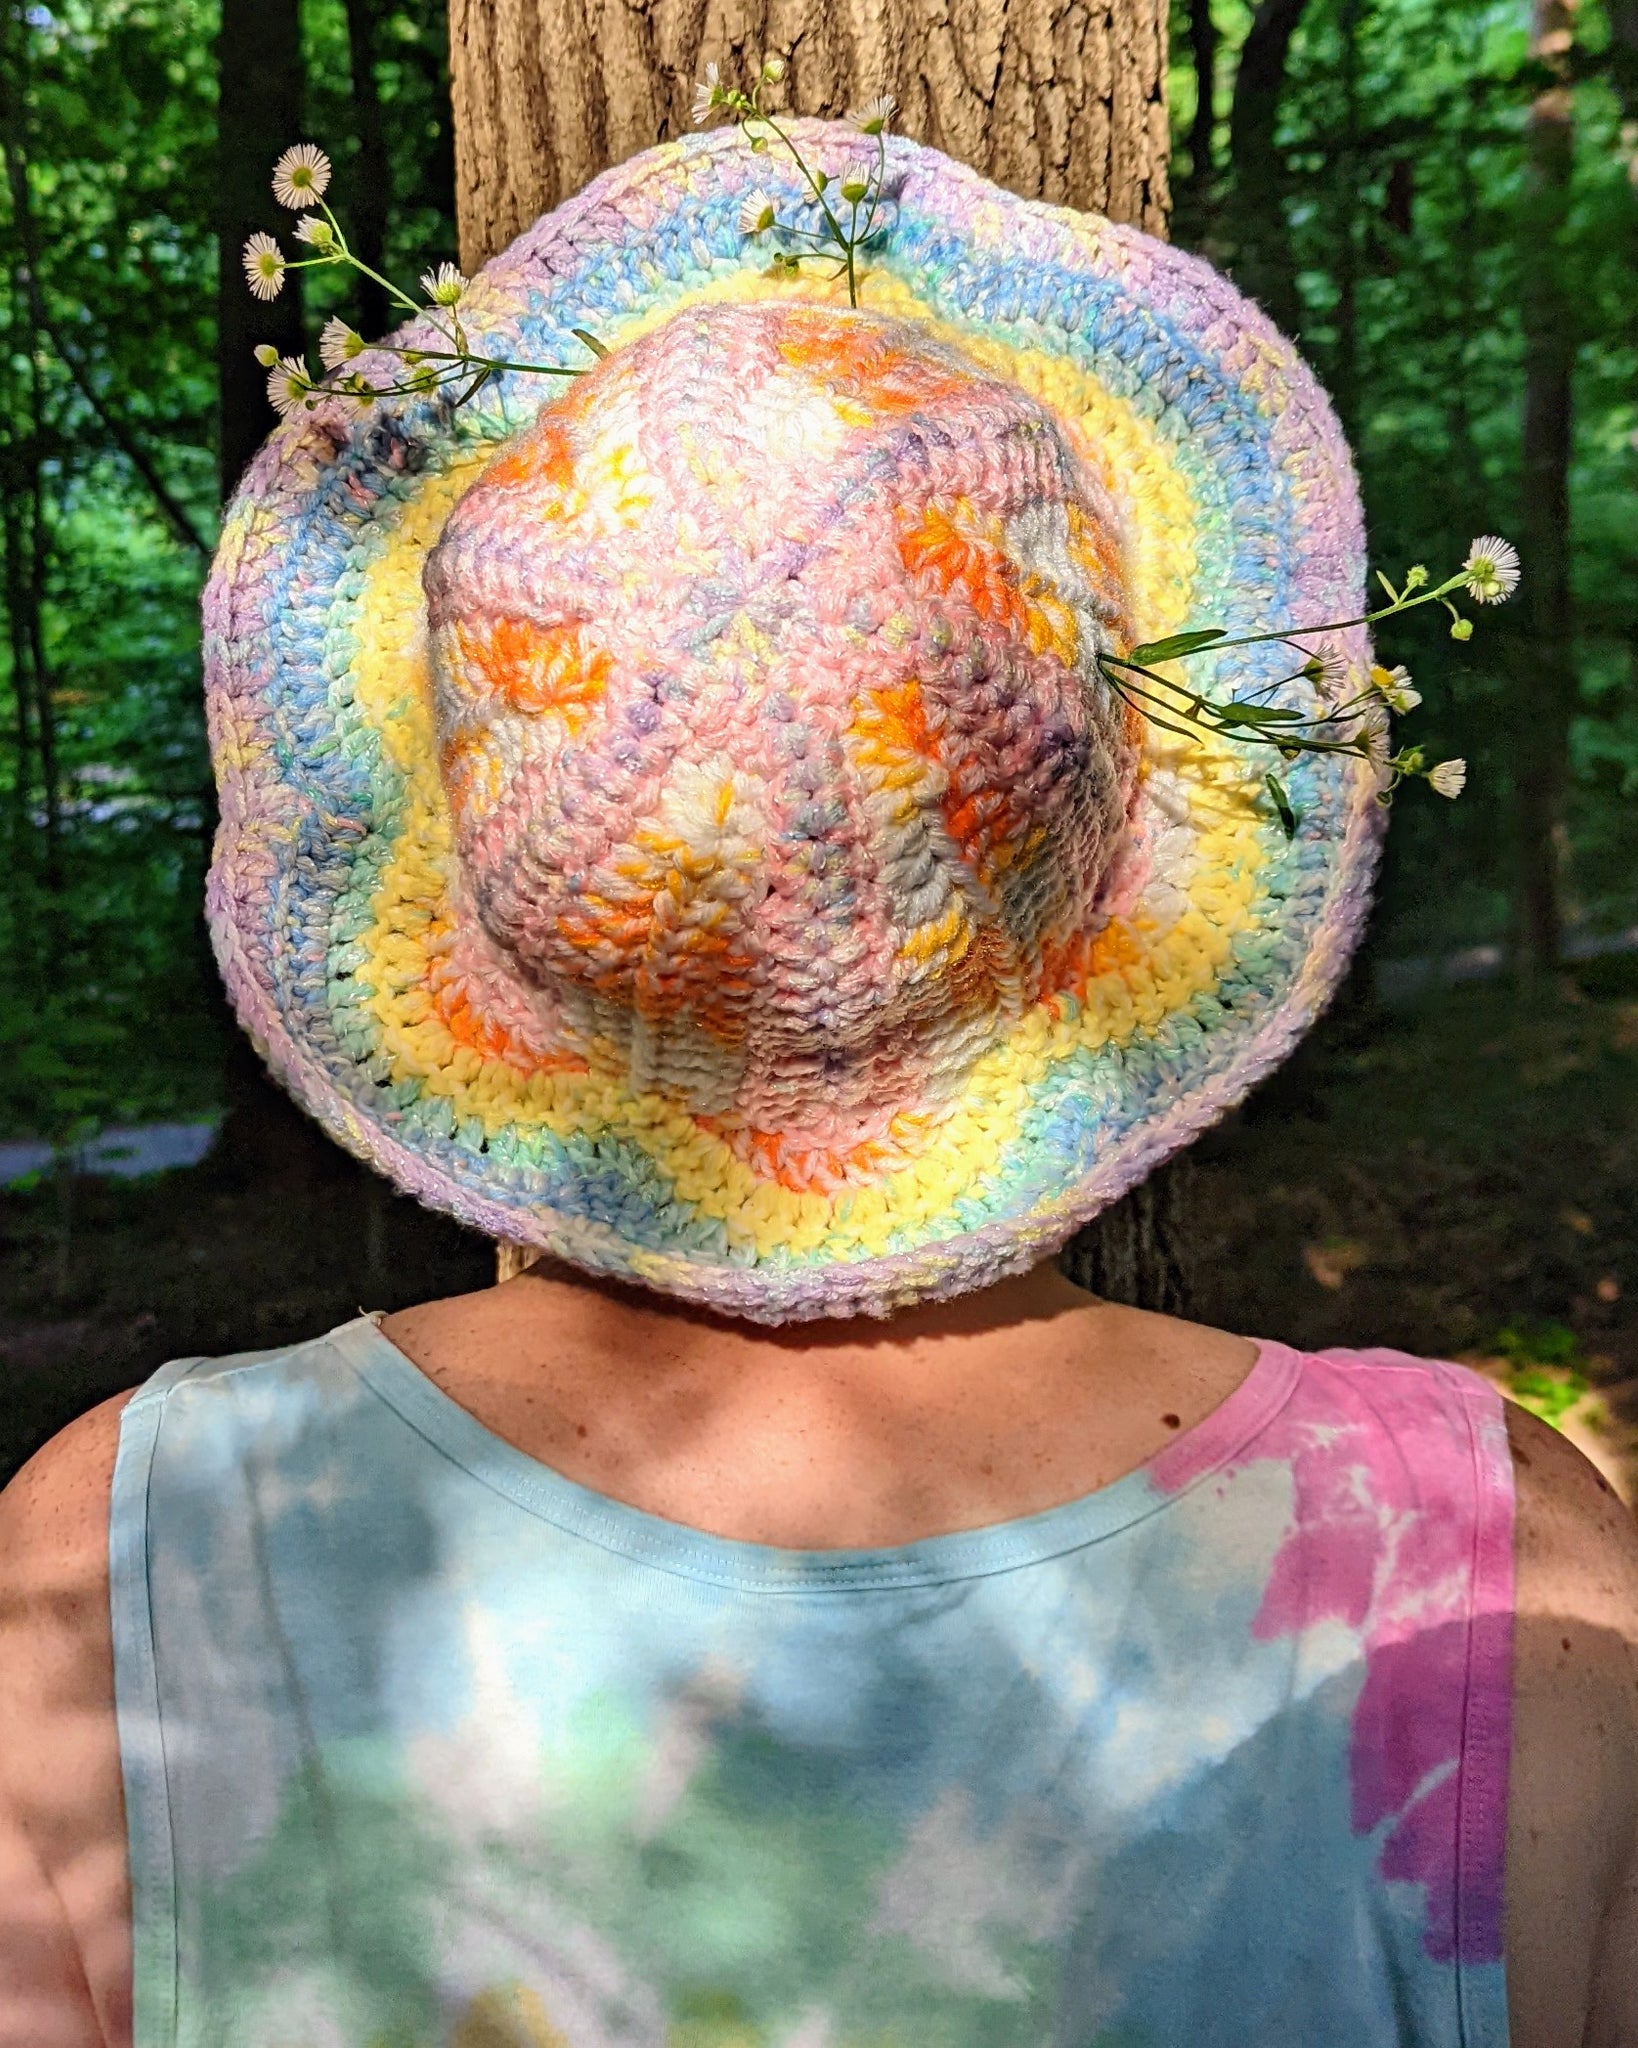 'Daisy Derby' Hat Downloadable Crochet Pattern